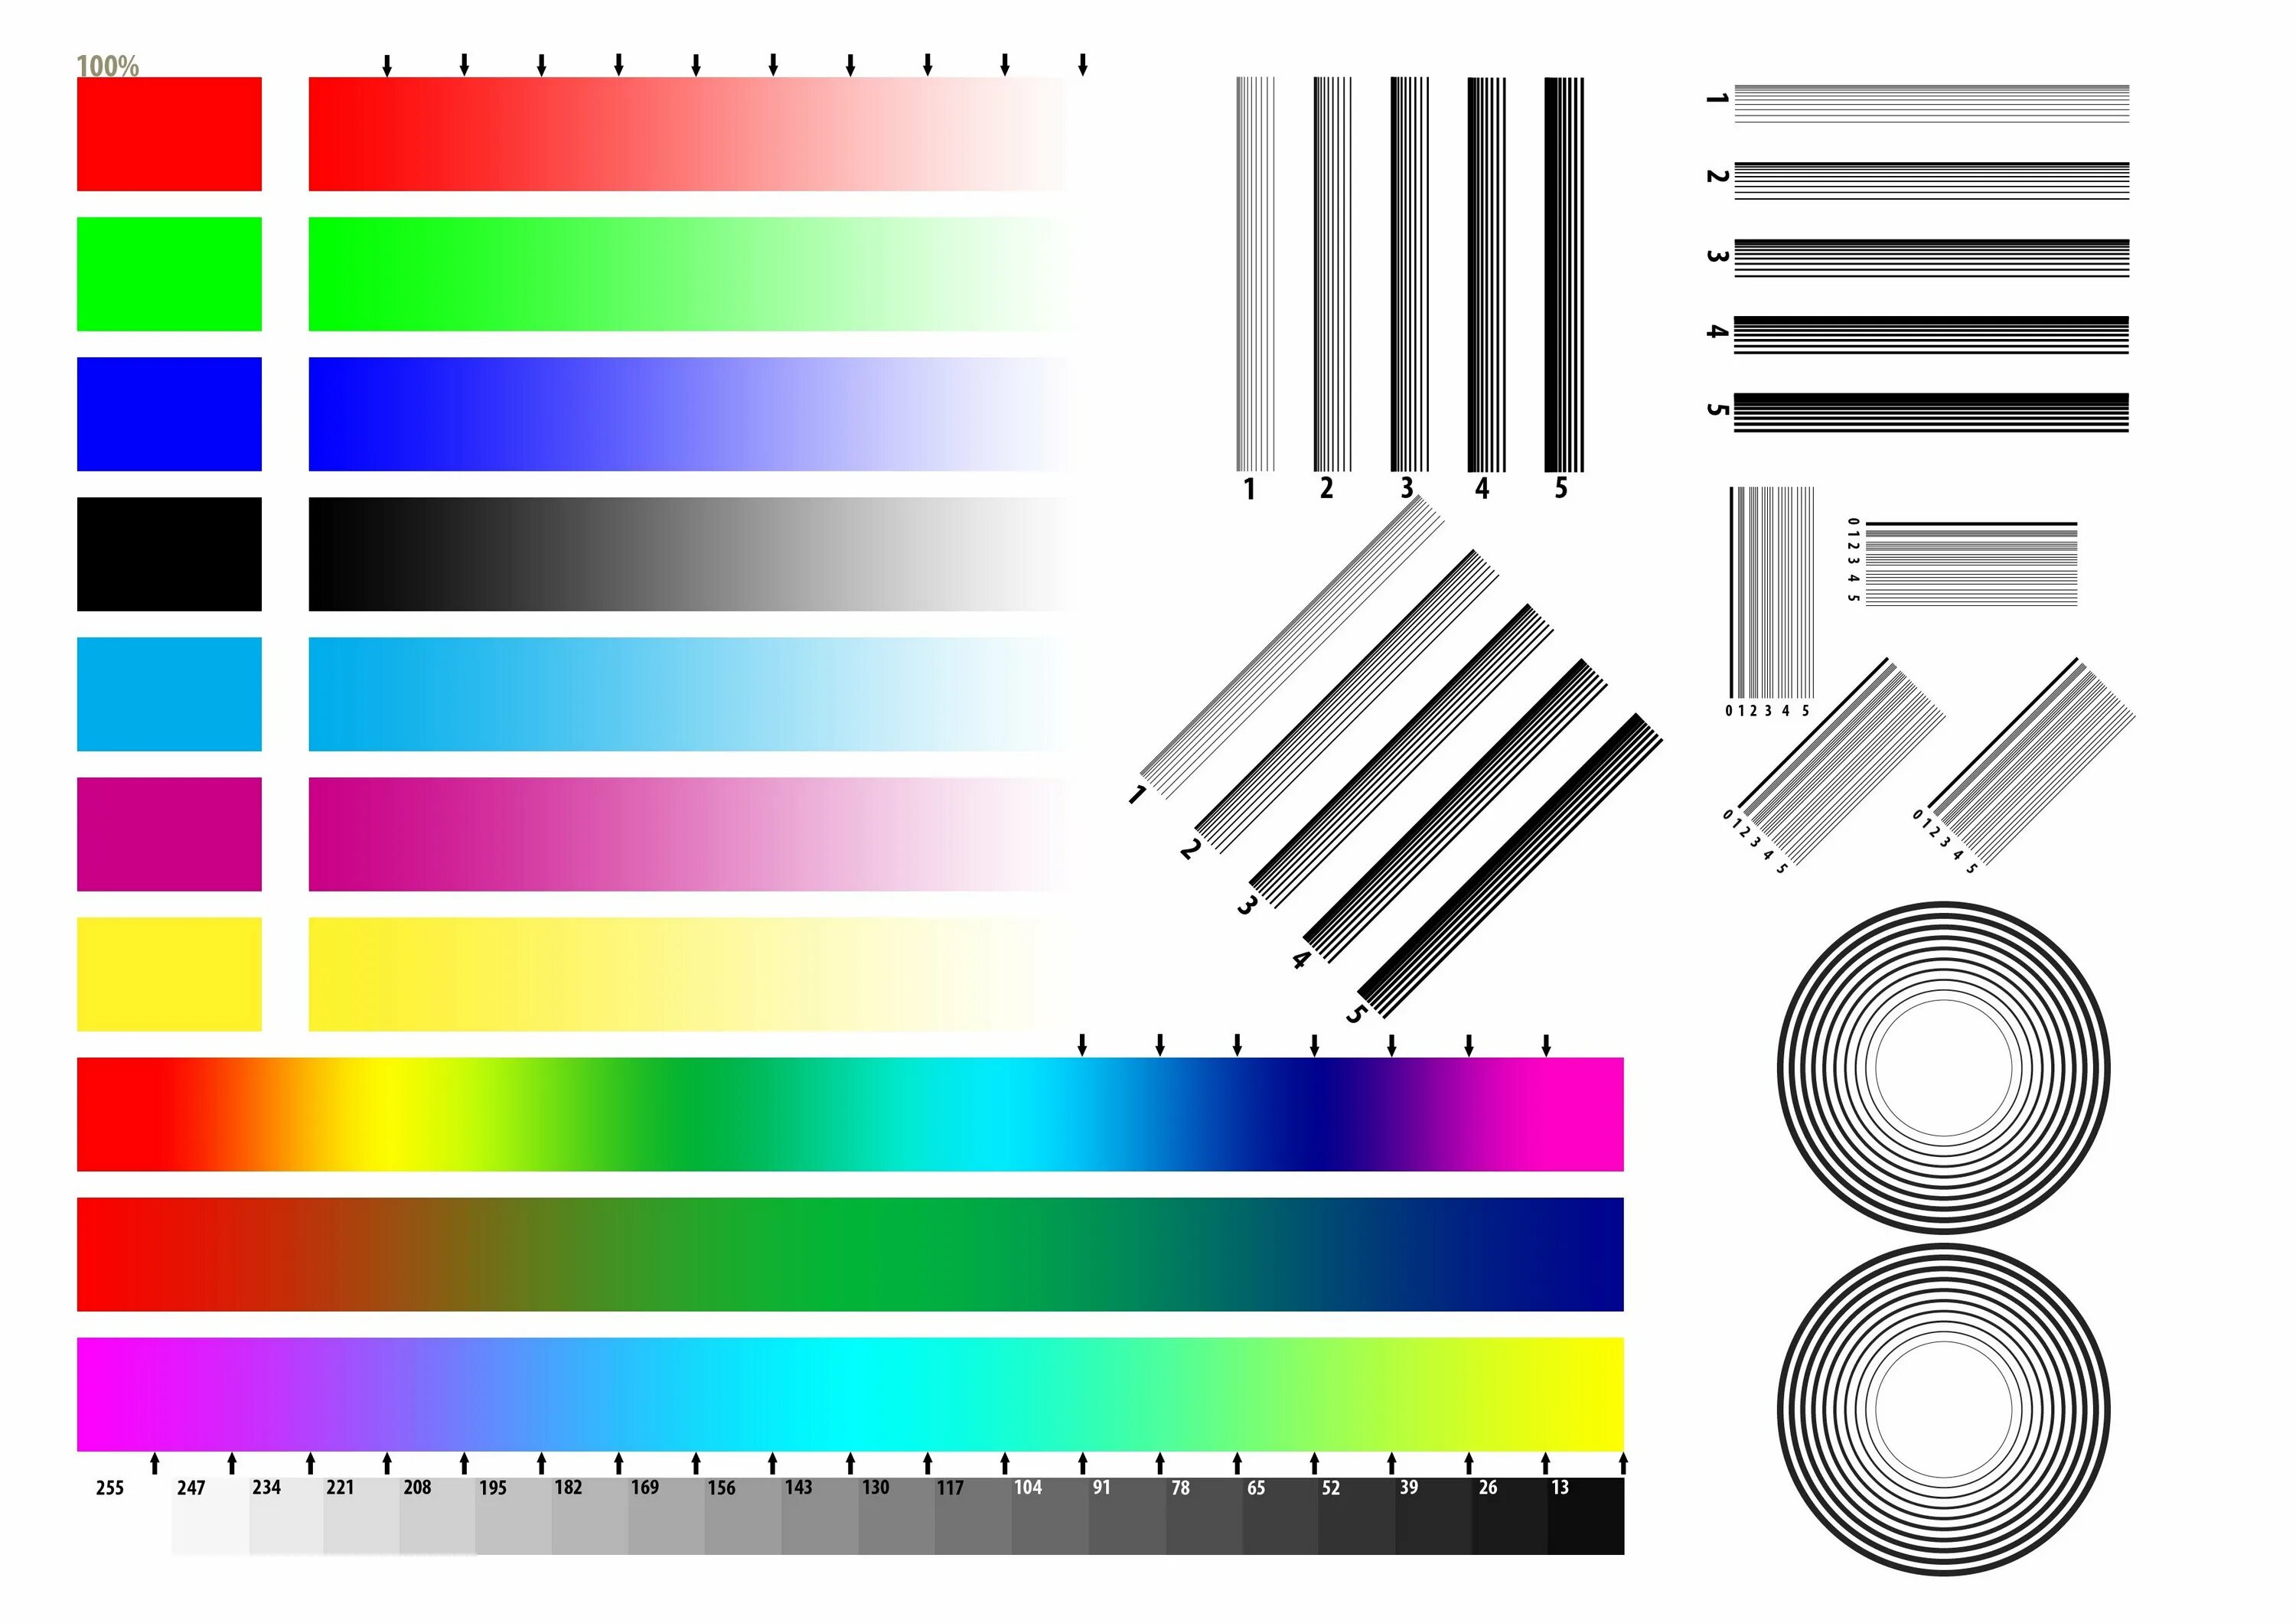 Картинка цветная для принтера. Тест принтера Эпсон 4 цвета. Тестовый лист для принтера Эпсон l800. Тестовое изображение для струйного принтера Epson.